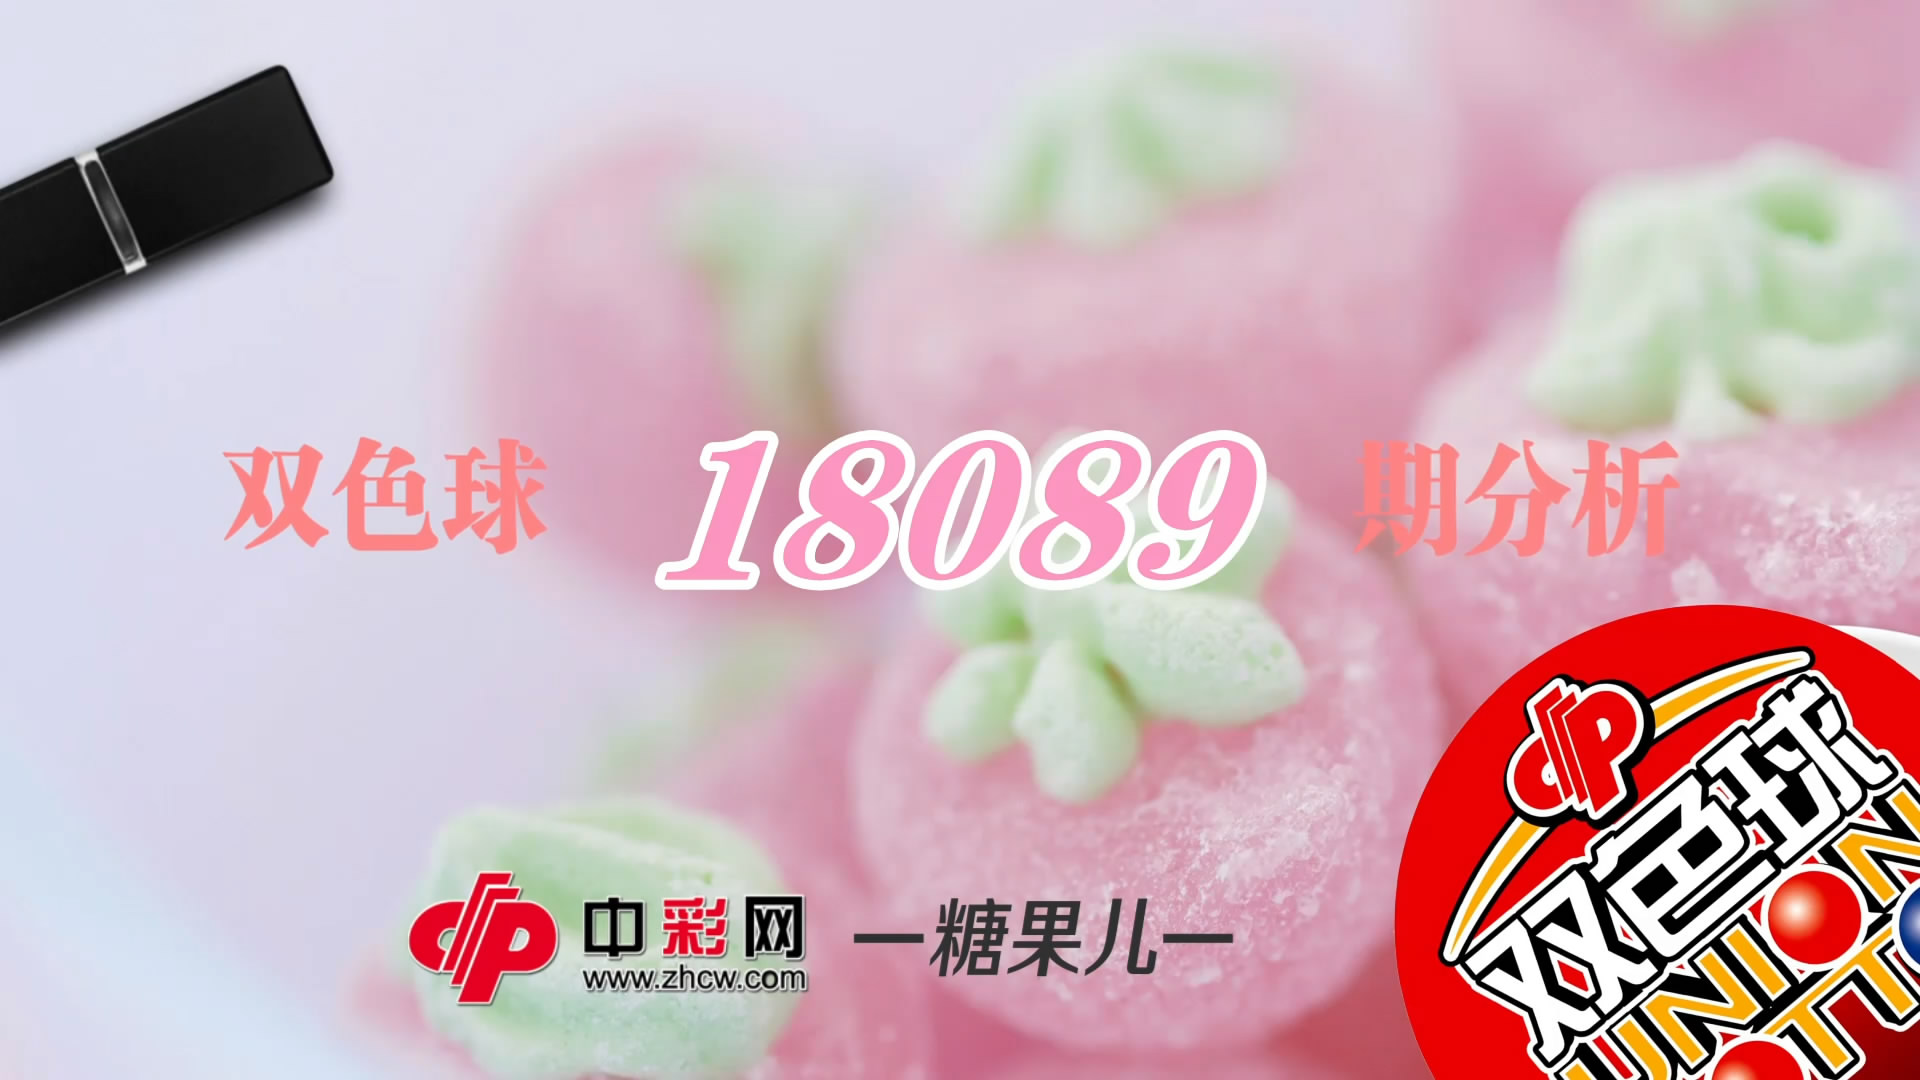 【中彩视频】糖果儿双色球第18089期